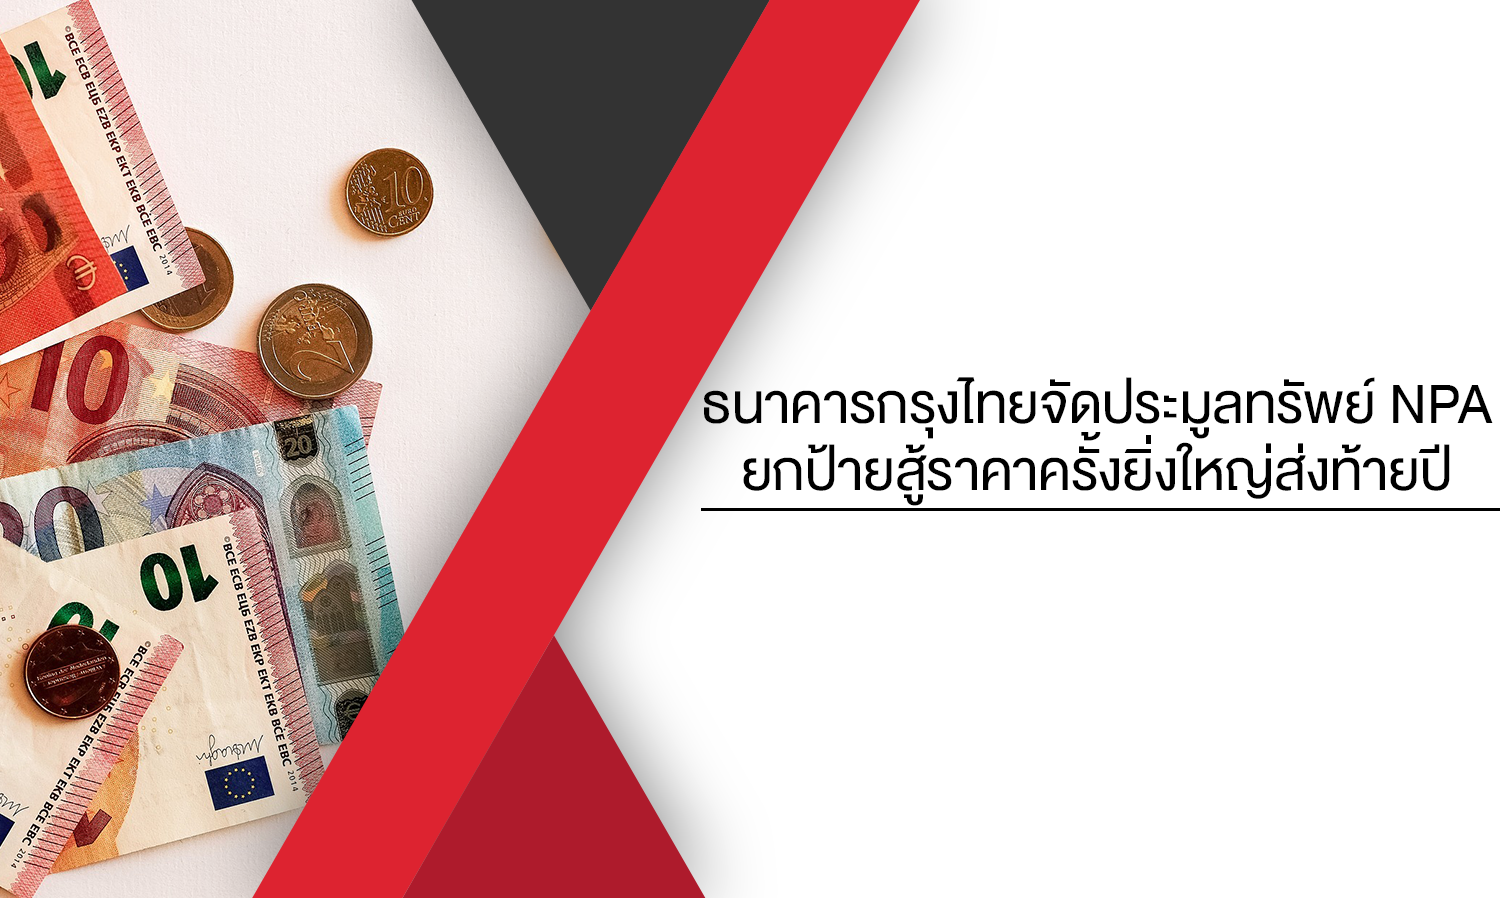 ธนาคารกรุงไทยจัดประมูลทรัพย์ NPA ยกป้ายสู้ราคาครั้งยิ่งใหญ่ส่งท้ายปี มอบส่วนลดพิเศษและแคมเปญดอกเบี้ย 0% นาน 12 เดือน